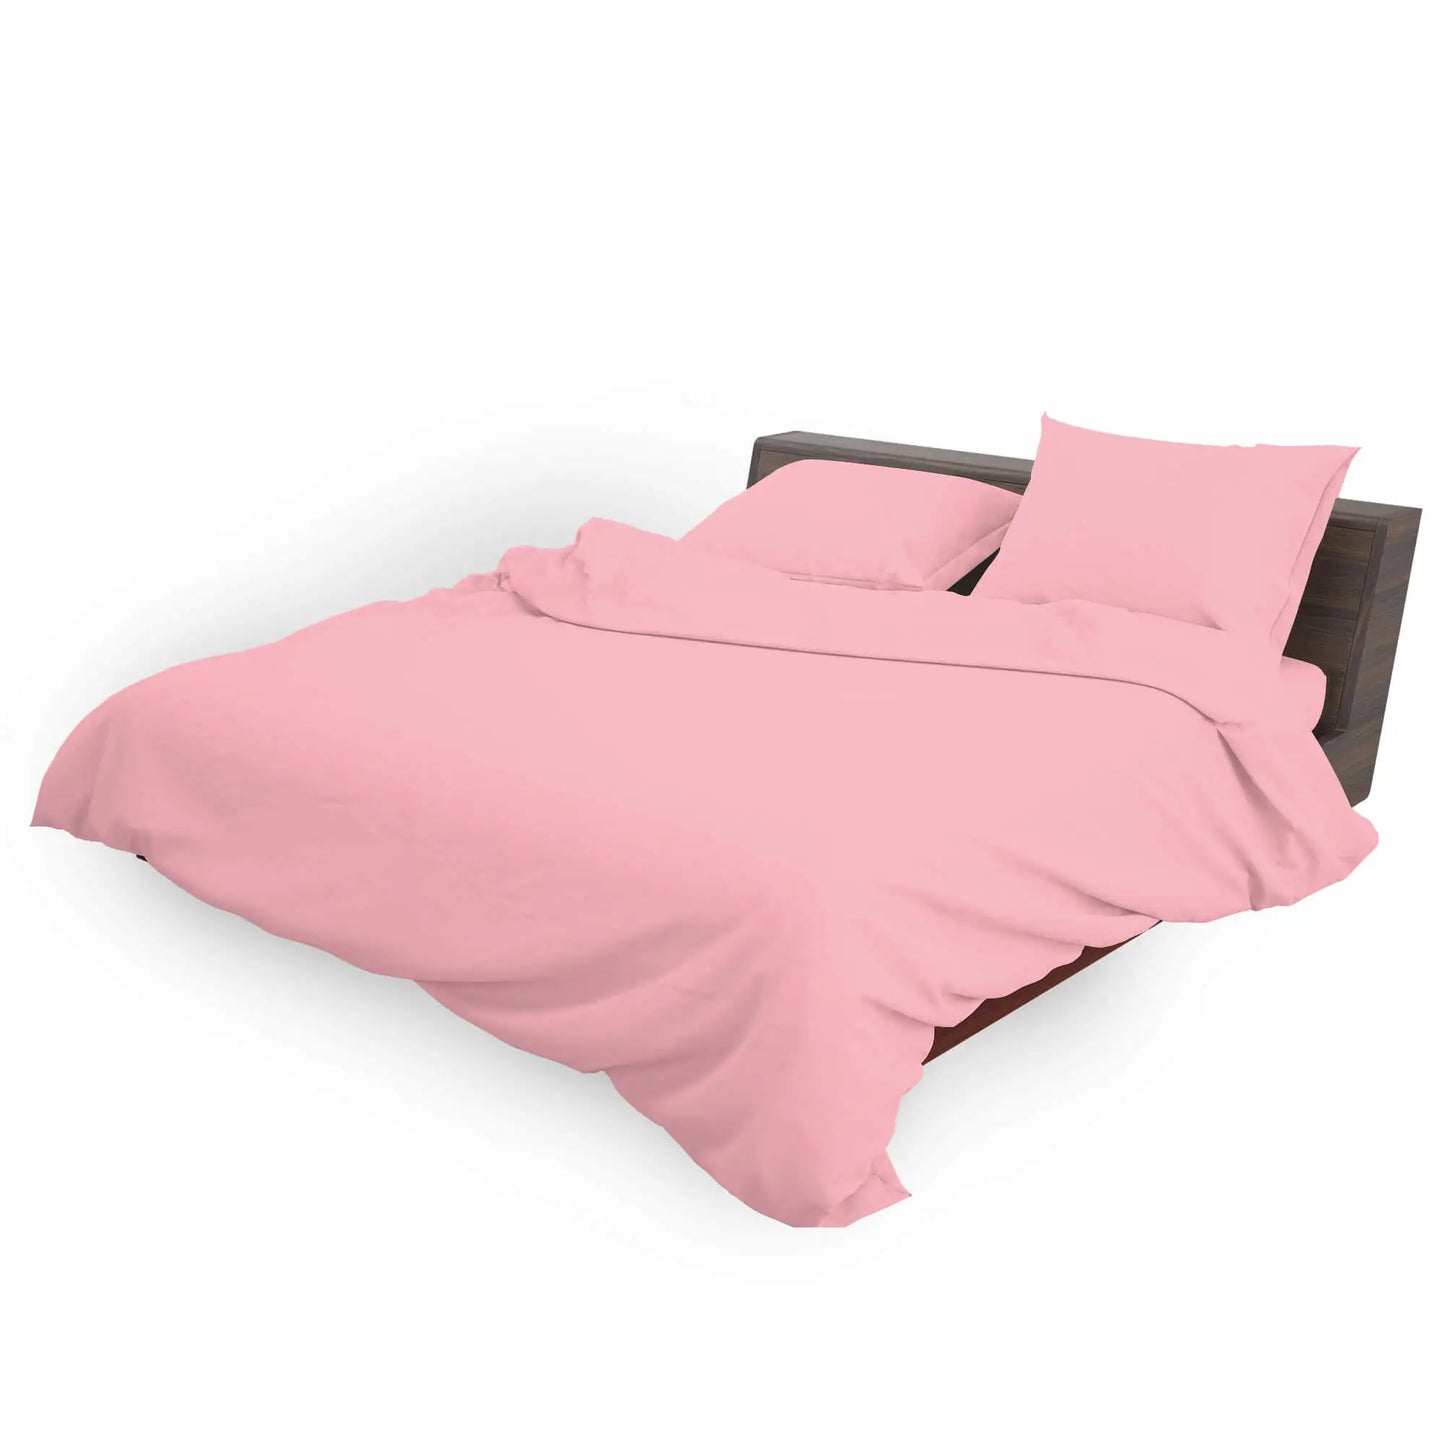 pink bedding duvet cover set